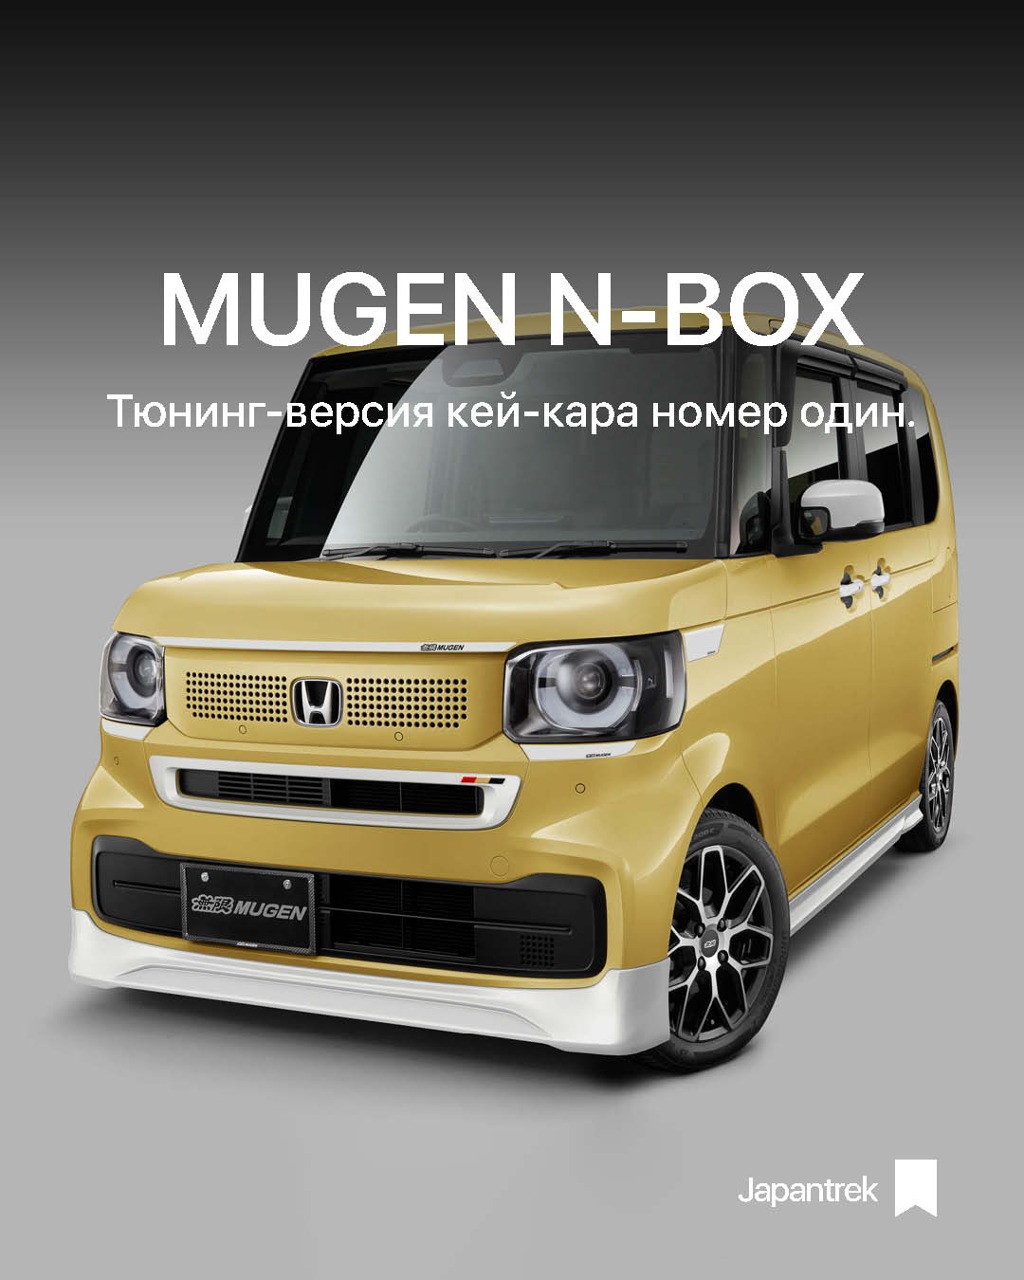 Обновленная Honda N-Box получила обвесы Mugen!